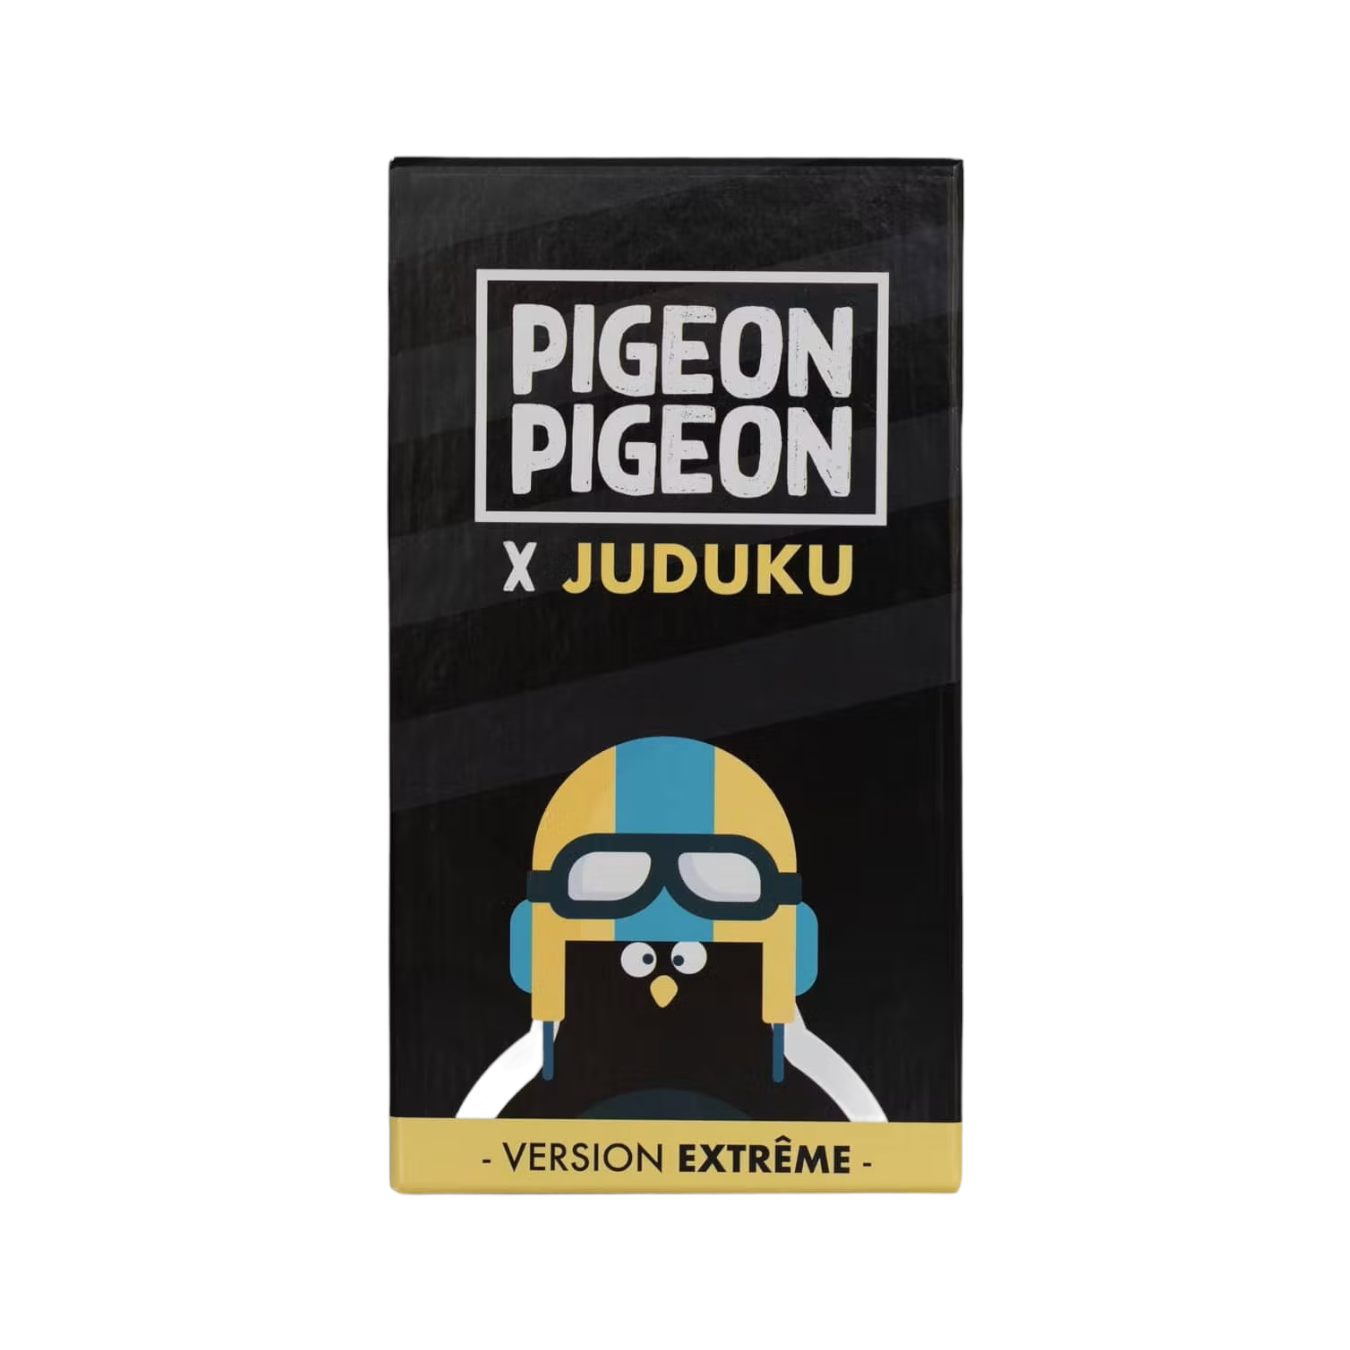 Pigeon Pigeon », un jeu de société qui vient de l'Oise - Courrier picard